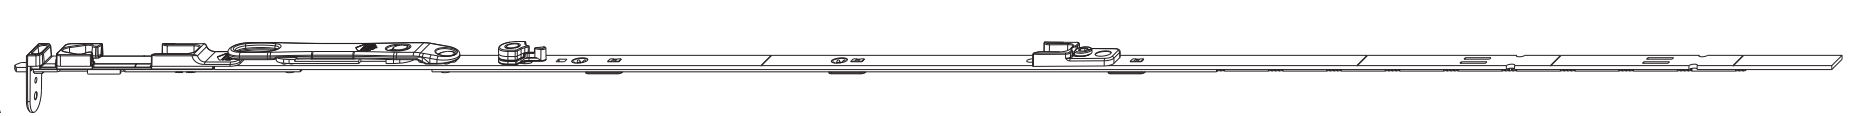 MAICO -  Catenaccio MULTI-MATIC a leva altezza maniglia fissa per canalino - gruppo 1950 - hbb/lbb 1701 - 1950 - altezza maniglia 1050